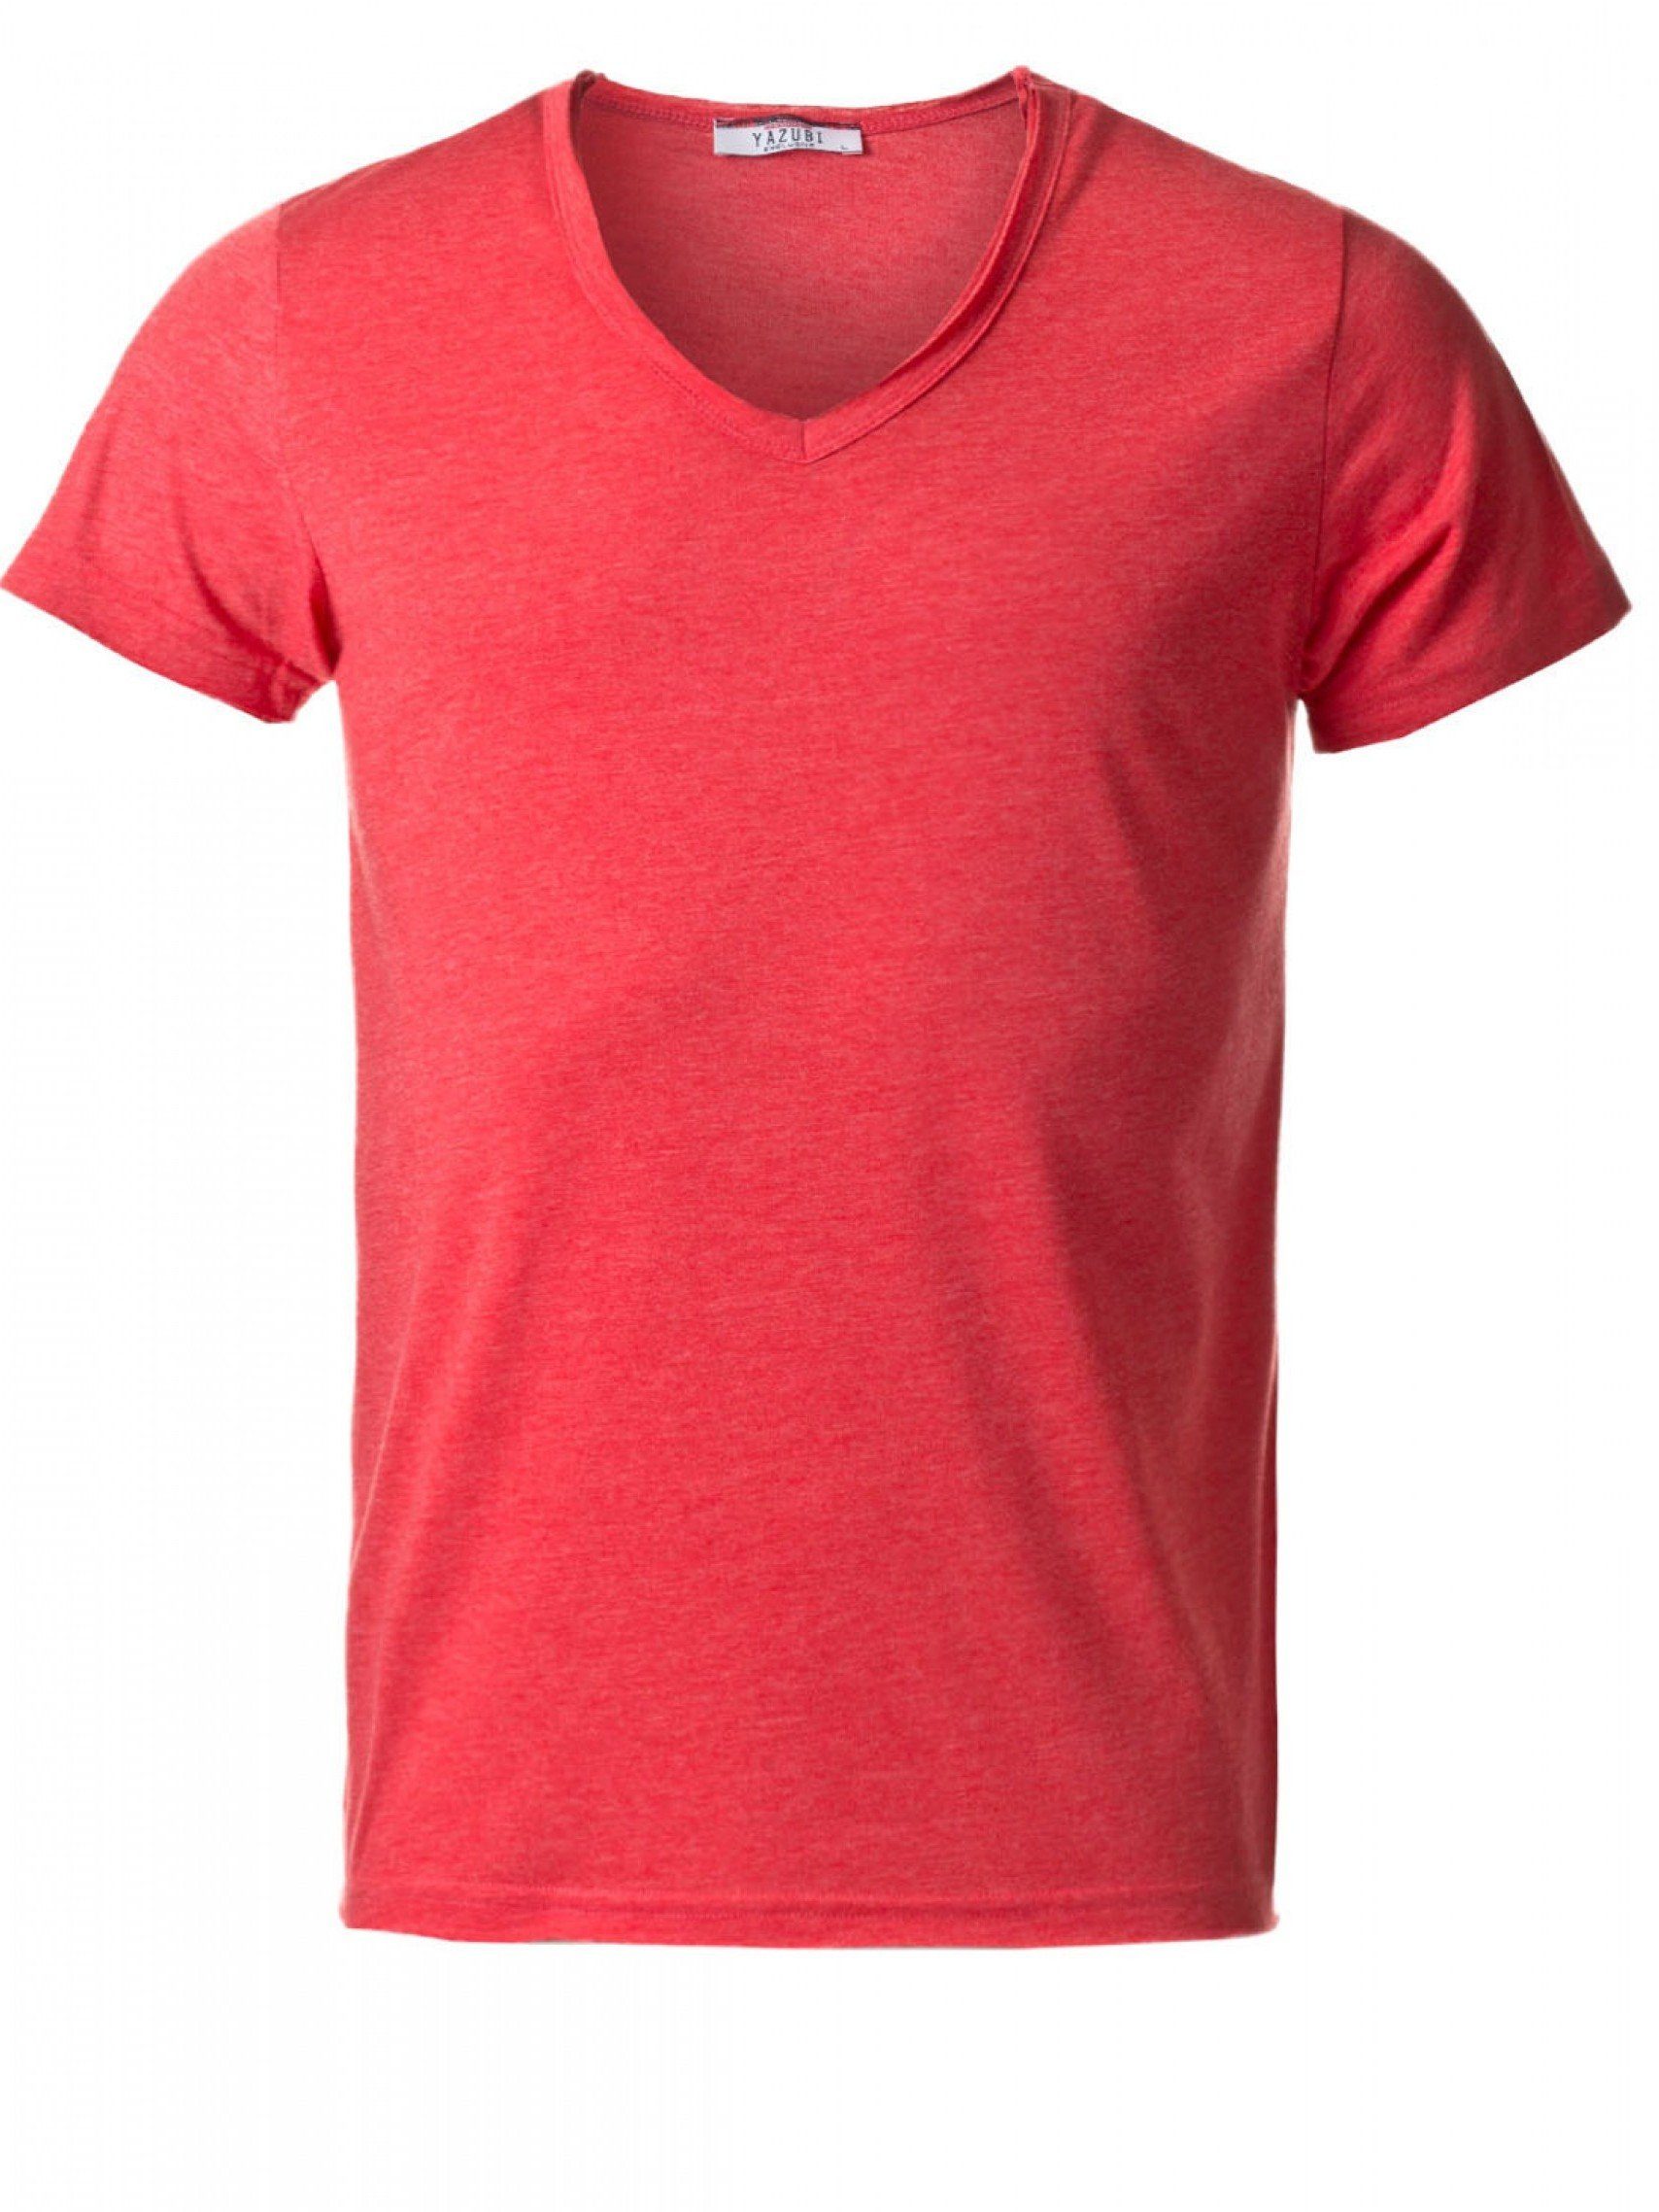 Rot Yazubi V-Ausschnitt T-shirt red V-Neck Noah Shirt T-Shirt bequemes mit